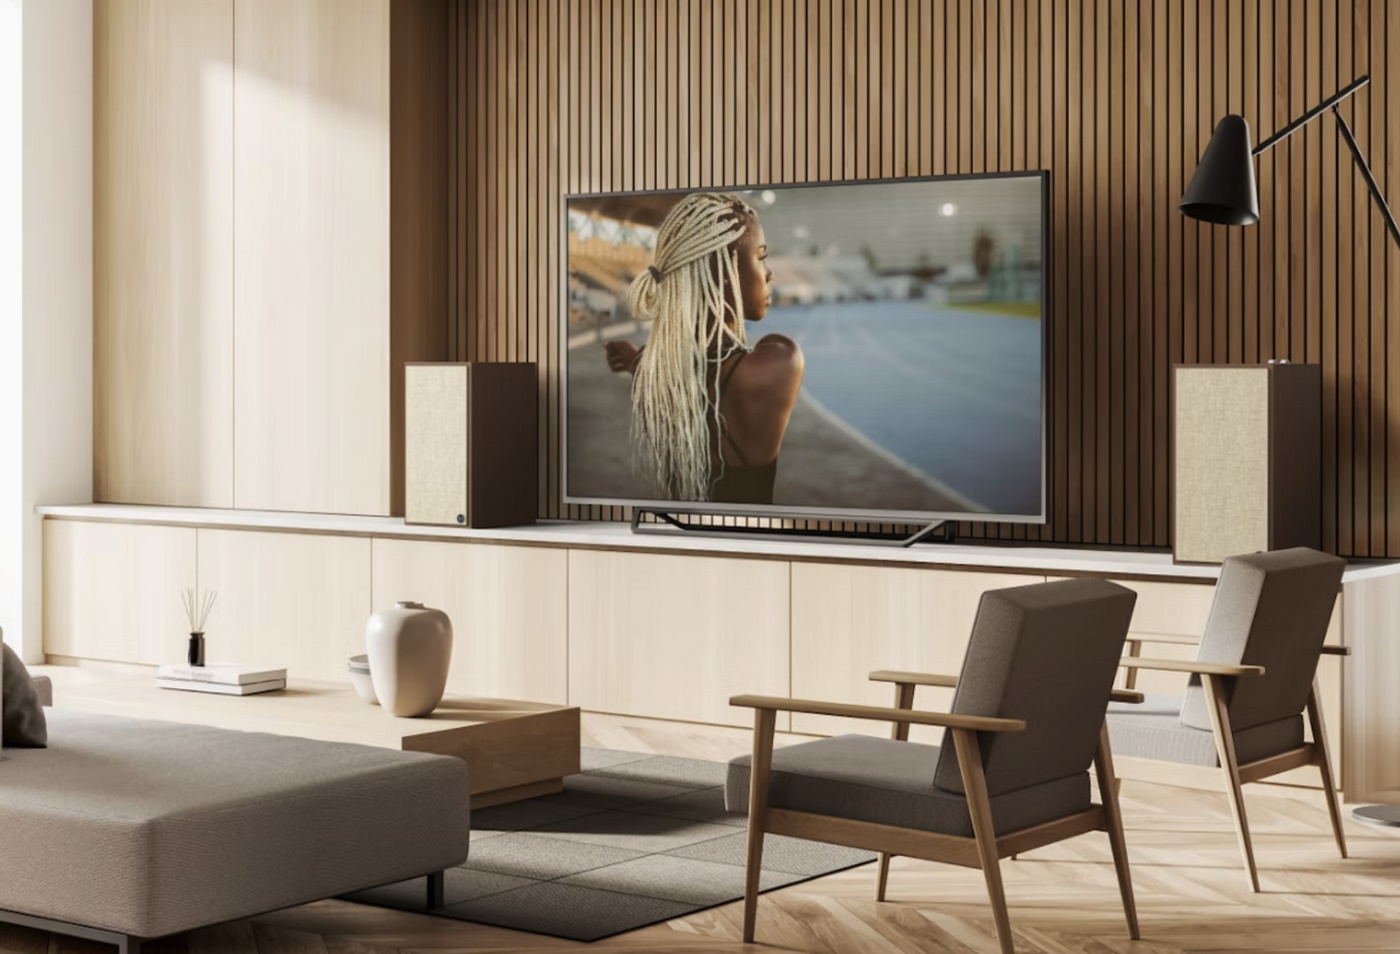 Zahvaljujući HDMI ARC ulazu, The Sevens s lakoćom se povezuju s televizorom te možemo koristiti<br />
daljinac od televizora za namještanje glasnoće